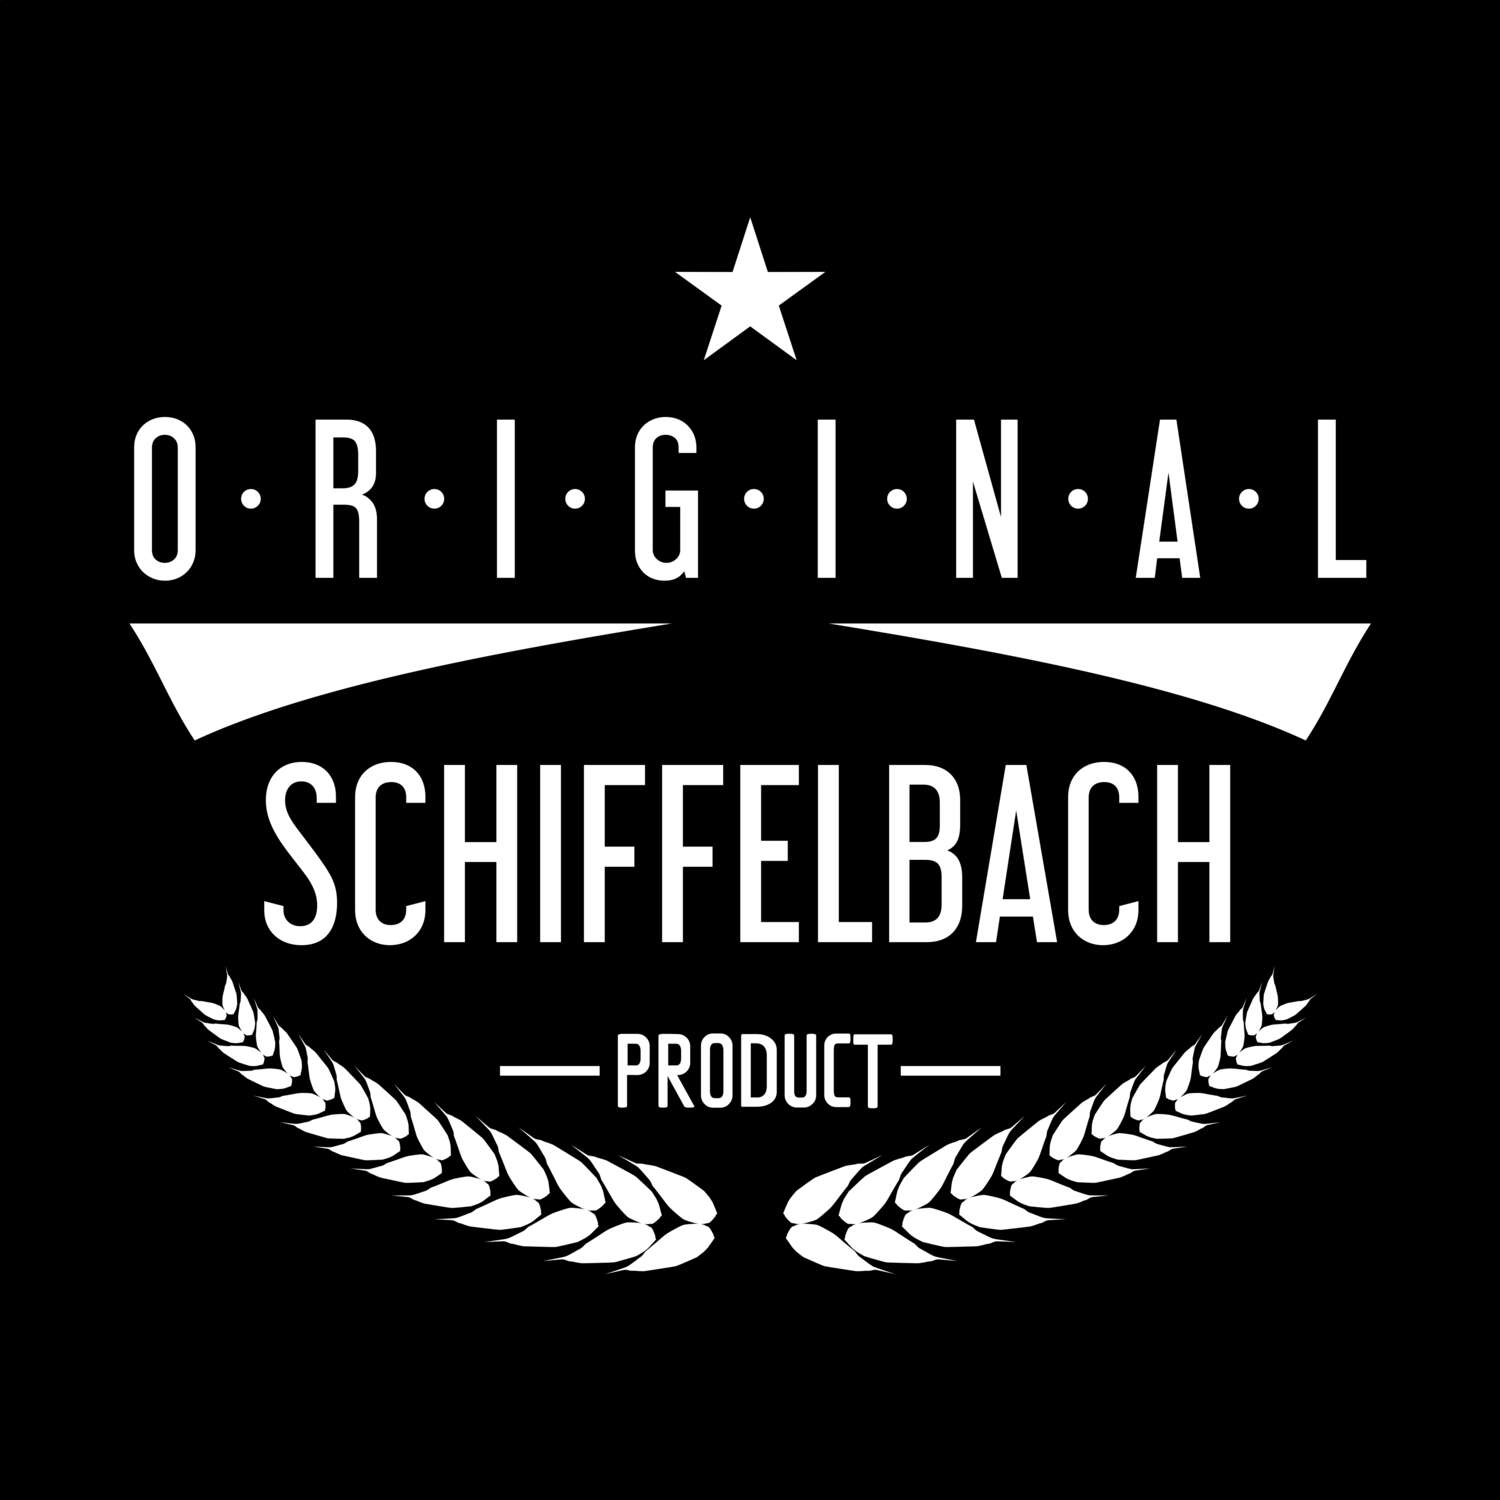 Schiffelbach T-Shirt »Original Product«